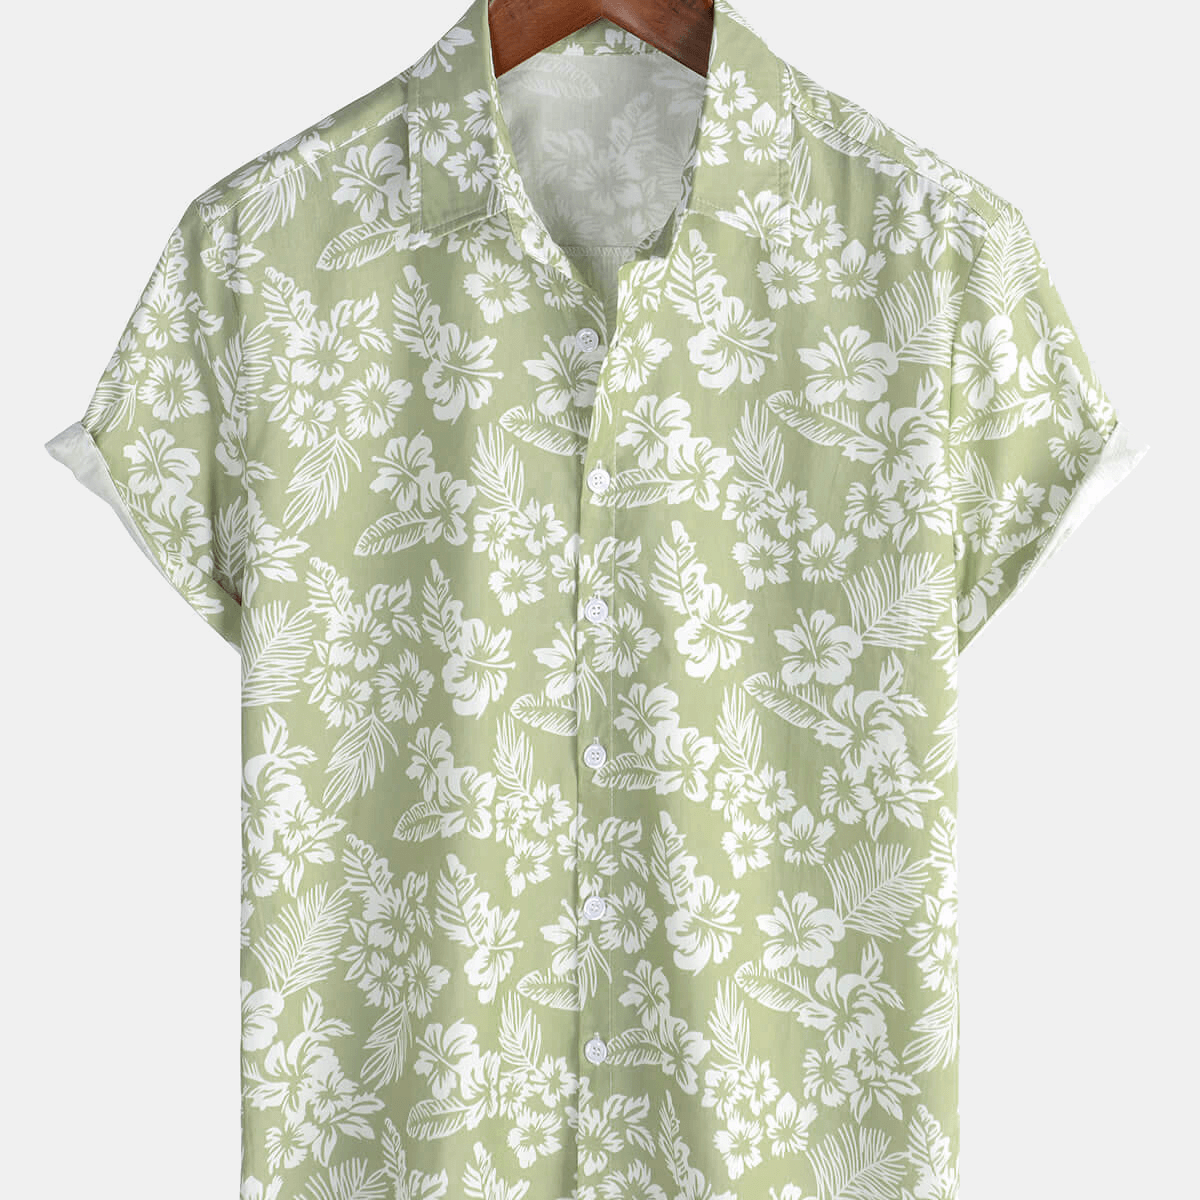 Men's Hawaiian Green Holiday Cotton Summer Floral Button Up Short Sleeve Shirt